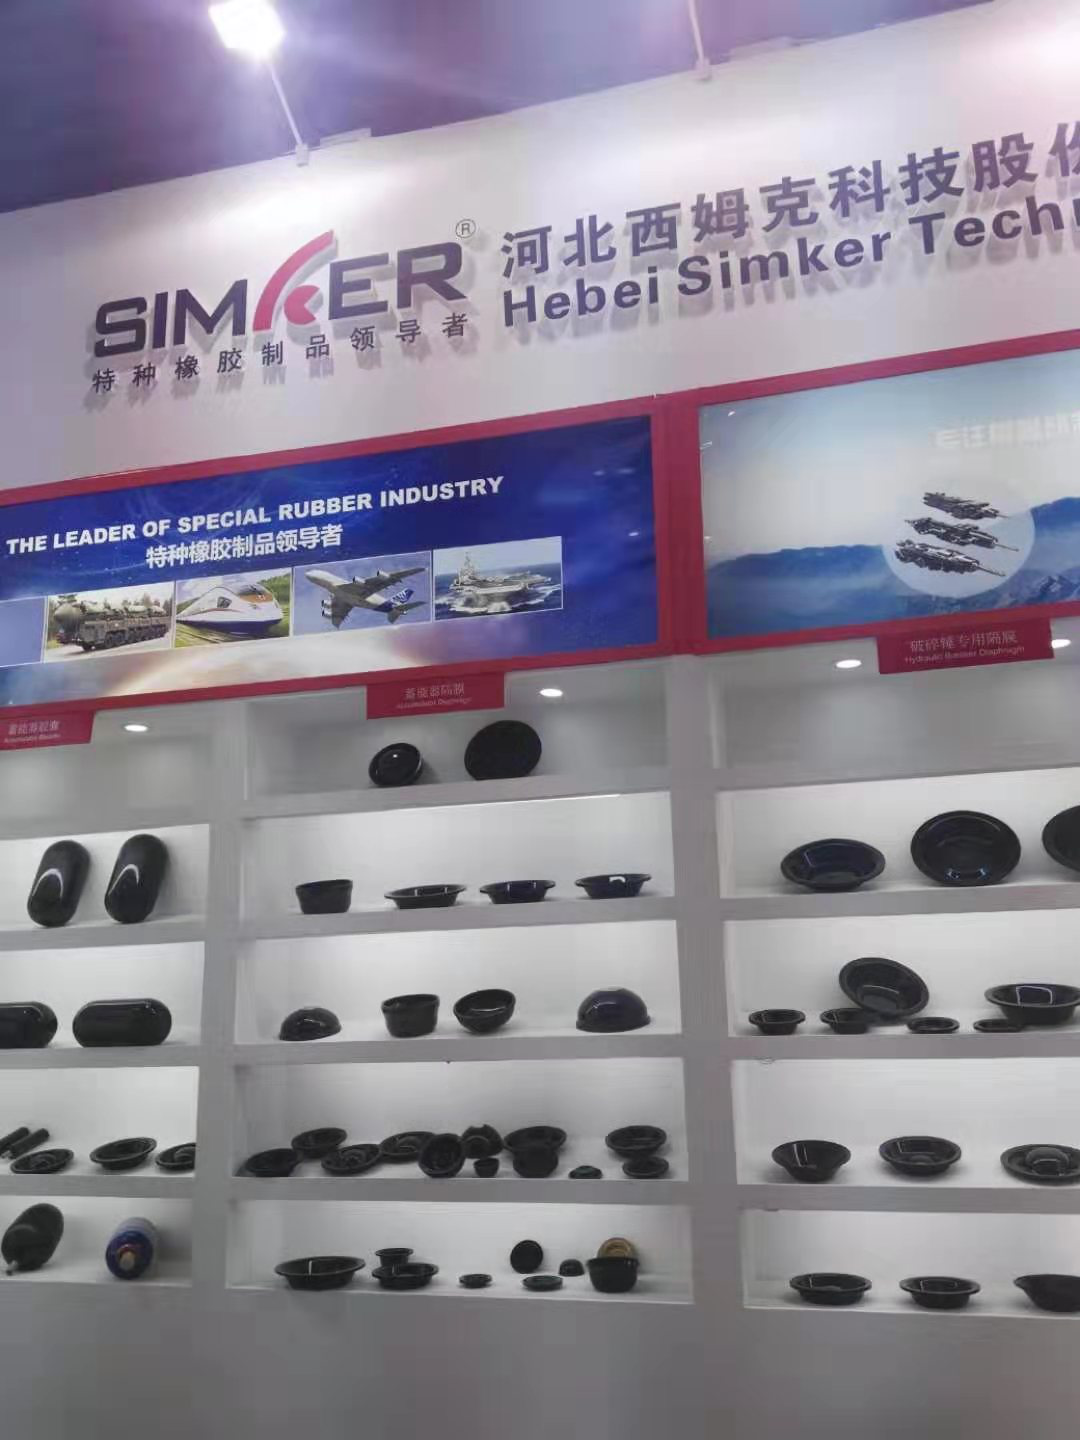 西姆克石墨烯加橡胶引领橡胶产业再升级